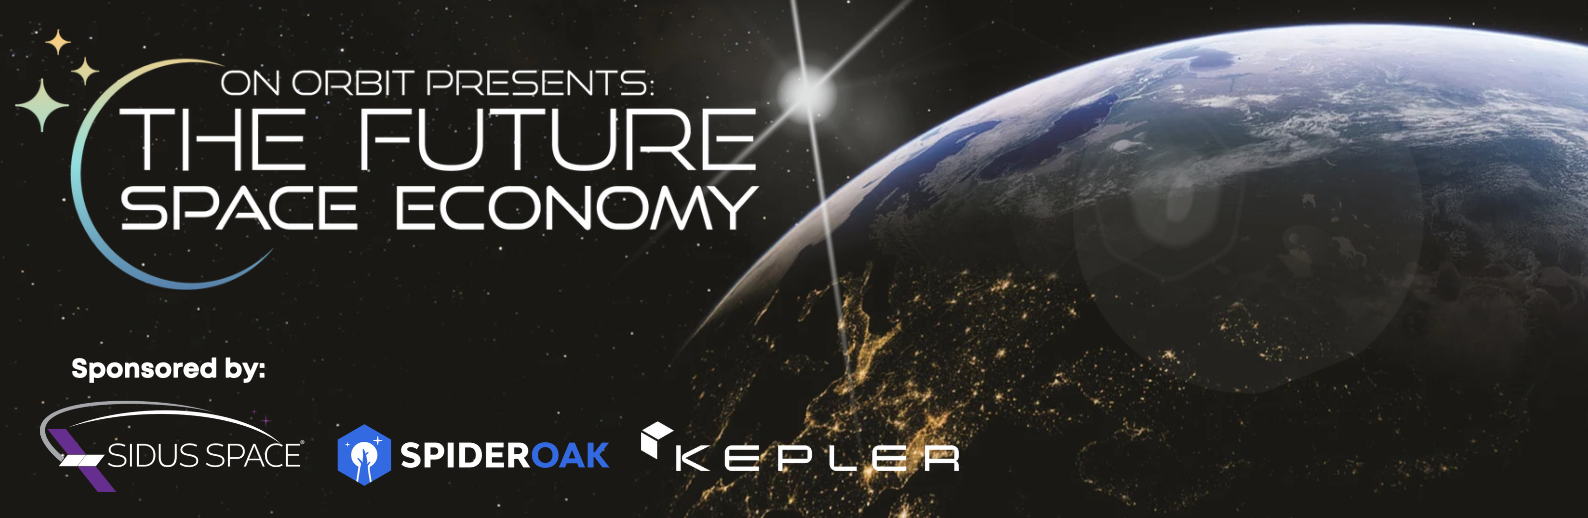 On Orbit Presents: The Future Space Economy